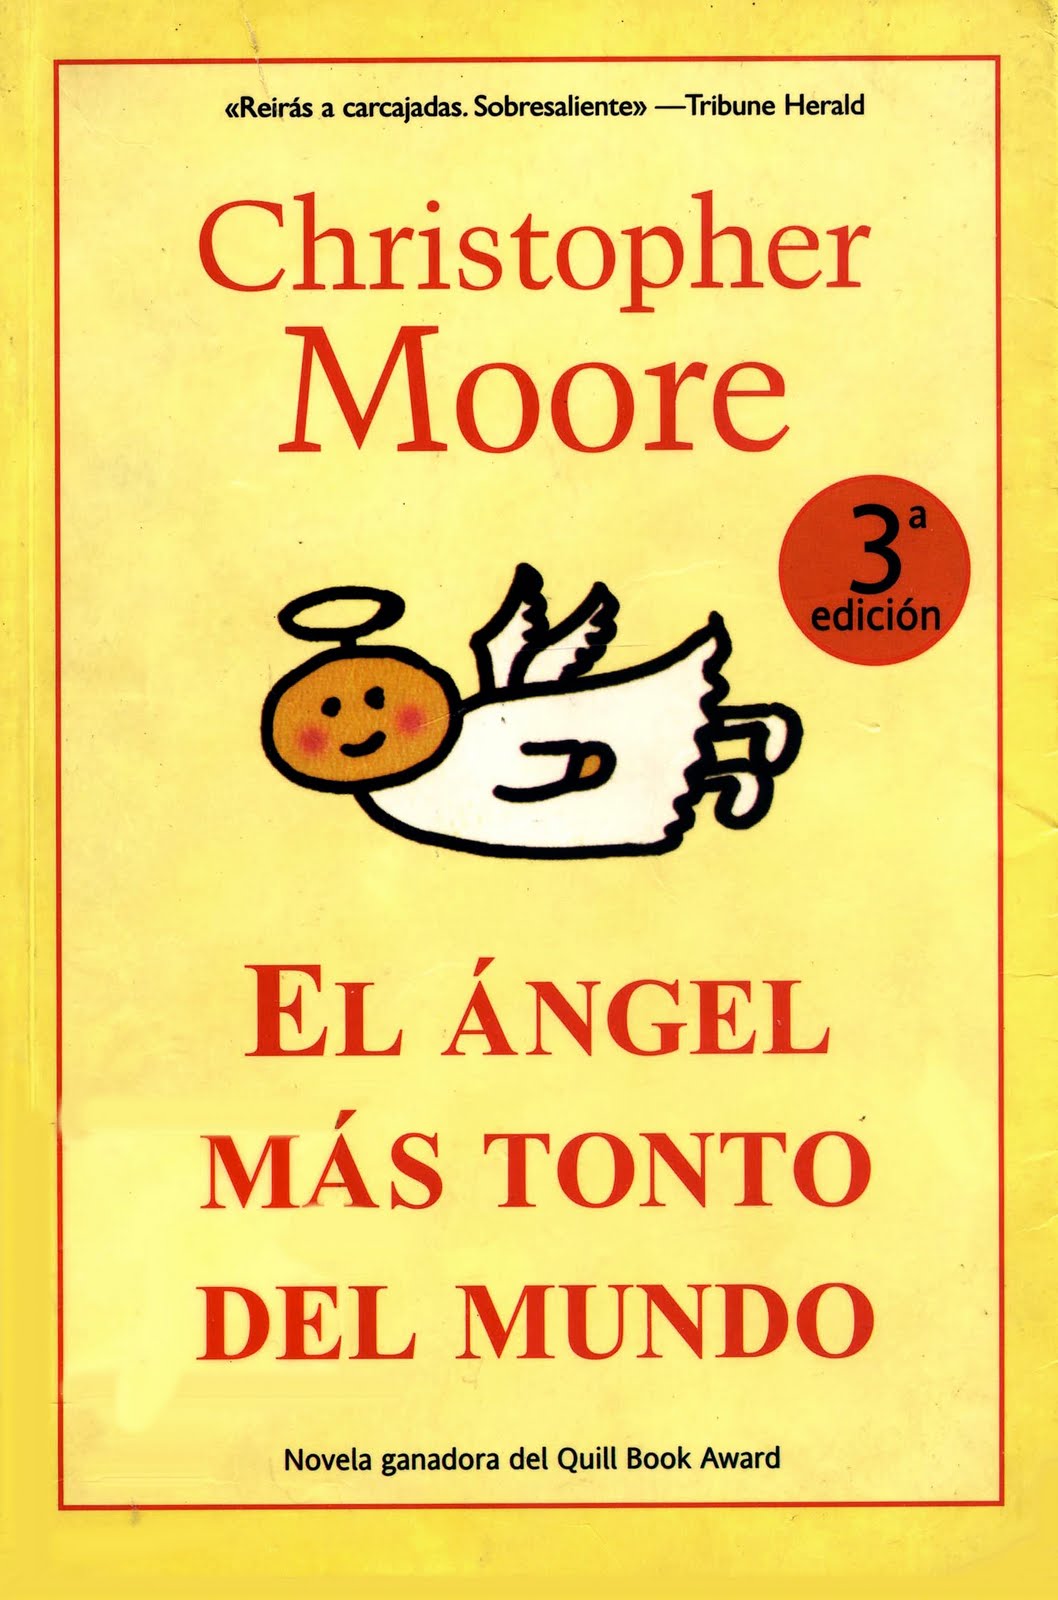 angel - DICIEMBRE 2015: El Ángel más tonto del mundo - Christopher Moore. El+angel+mas+tonto+del+mundo+144